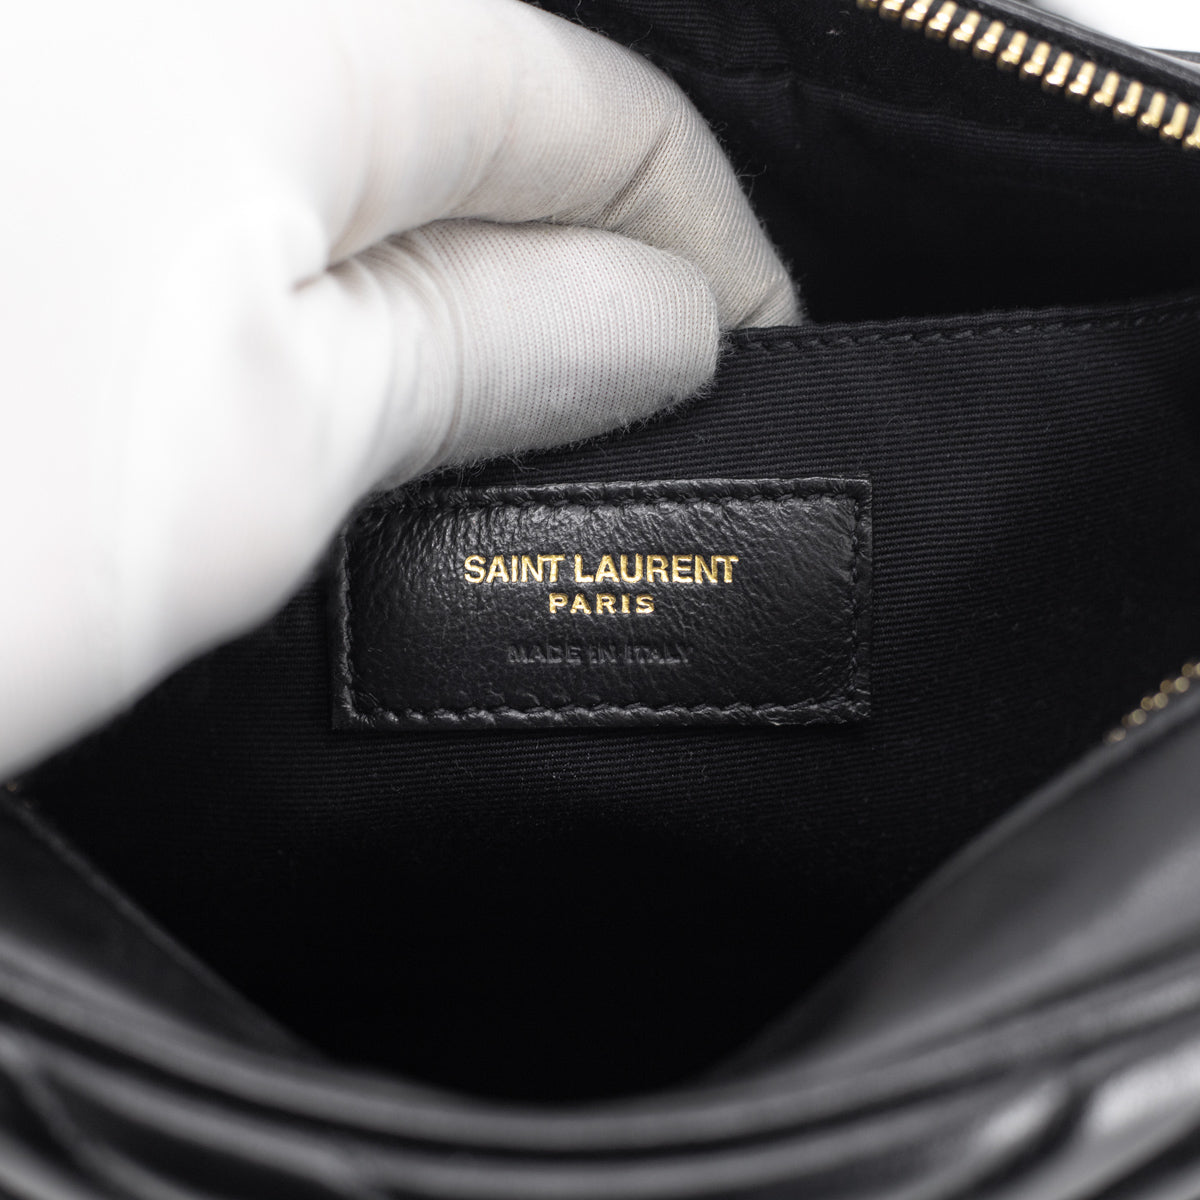 pre-loved] Yves Saint Laurent Horn Handle Shoulder Bag - black